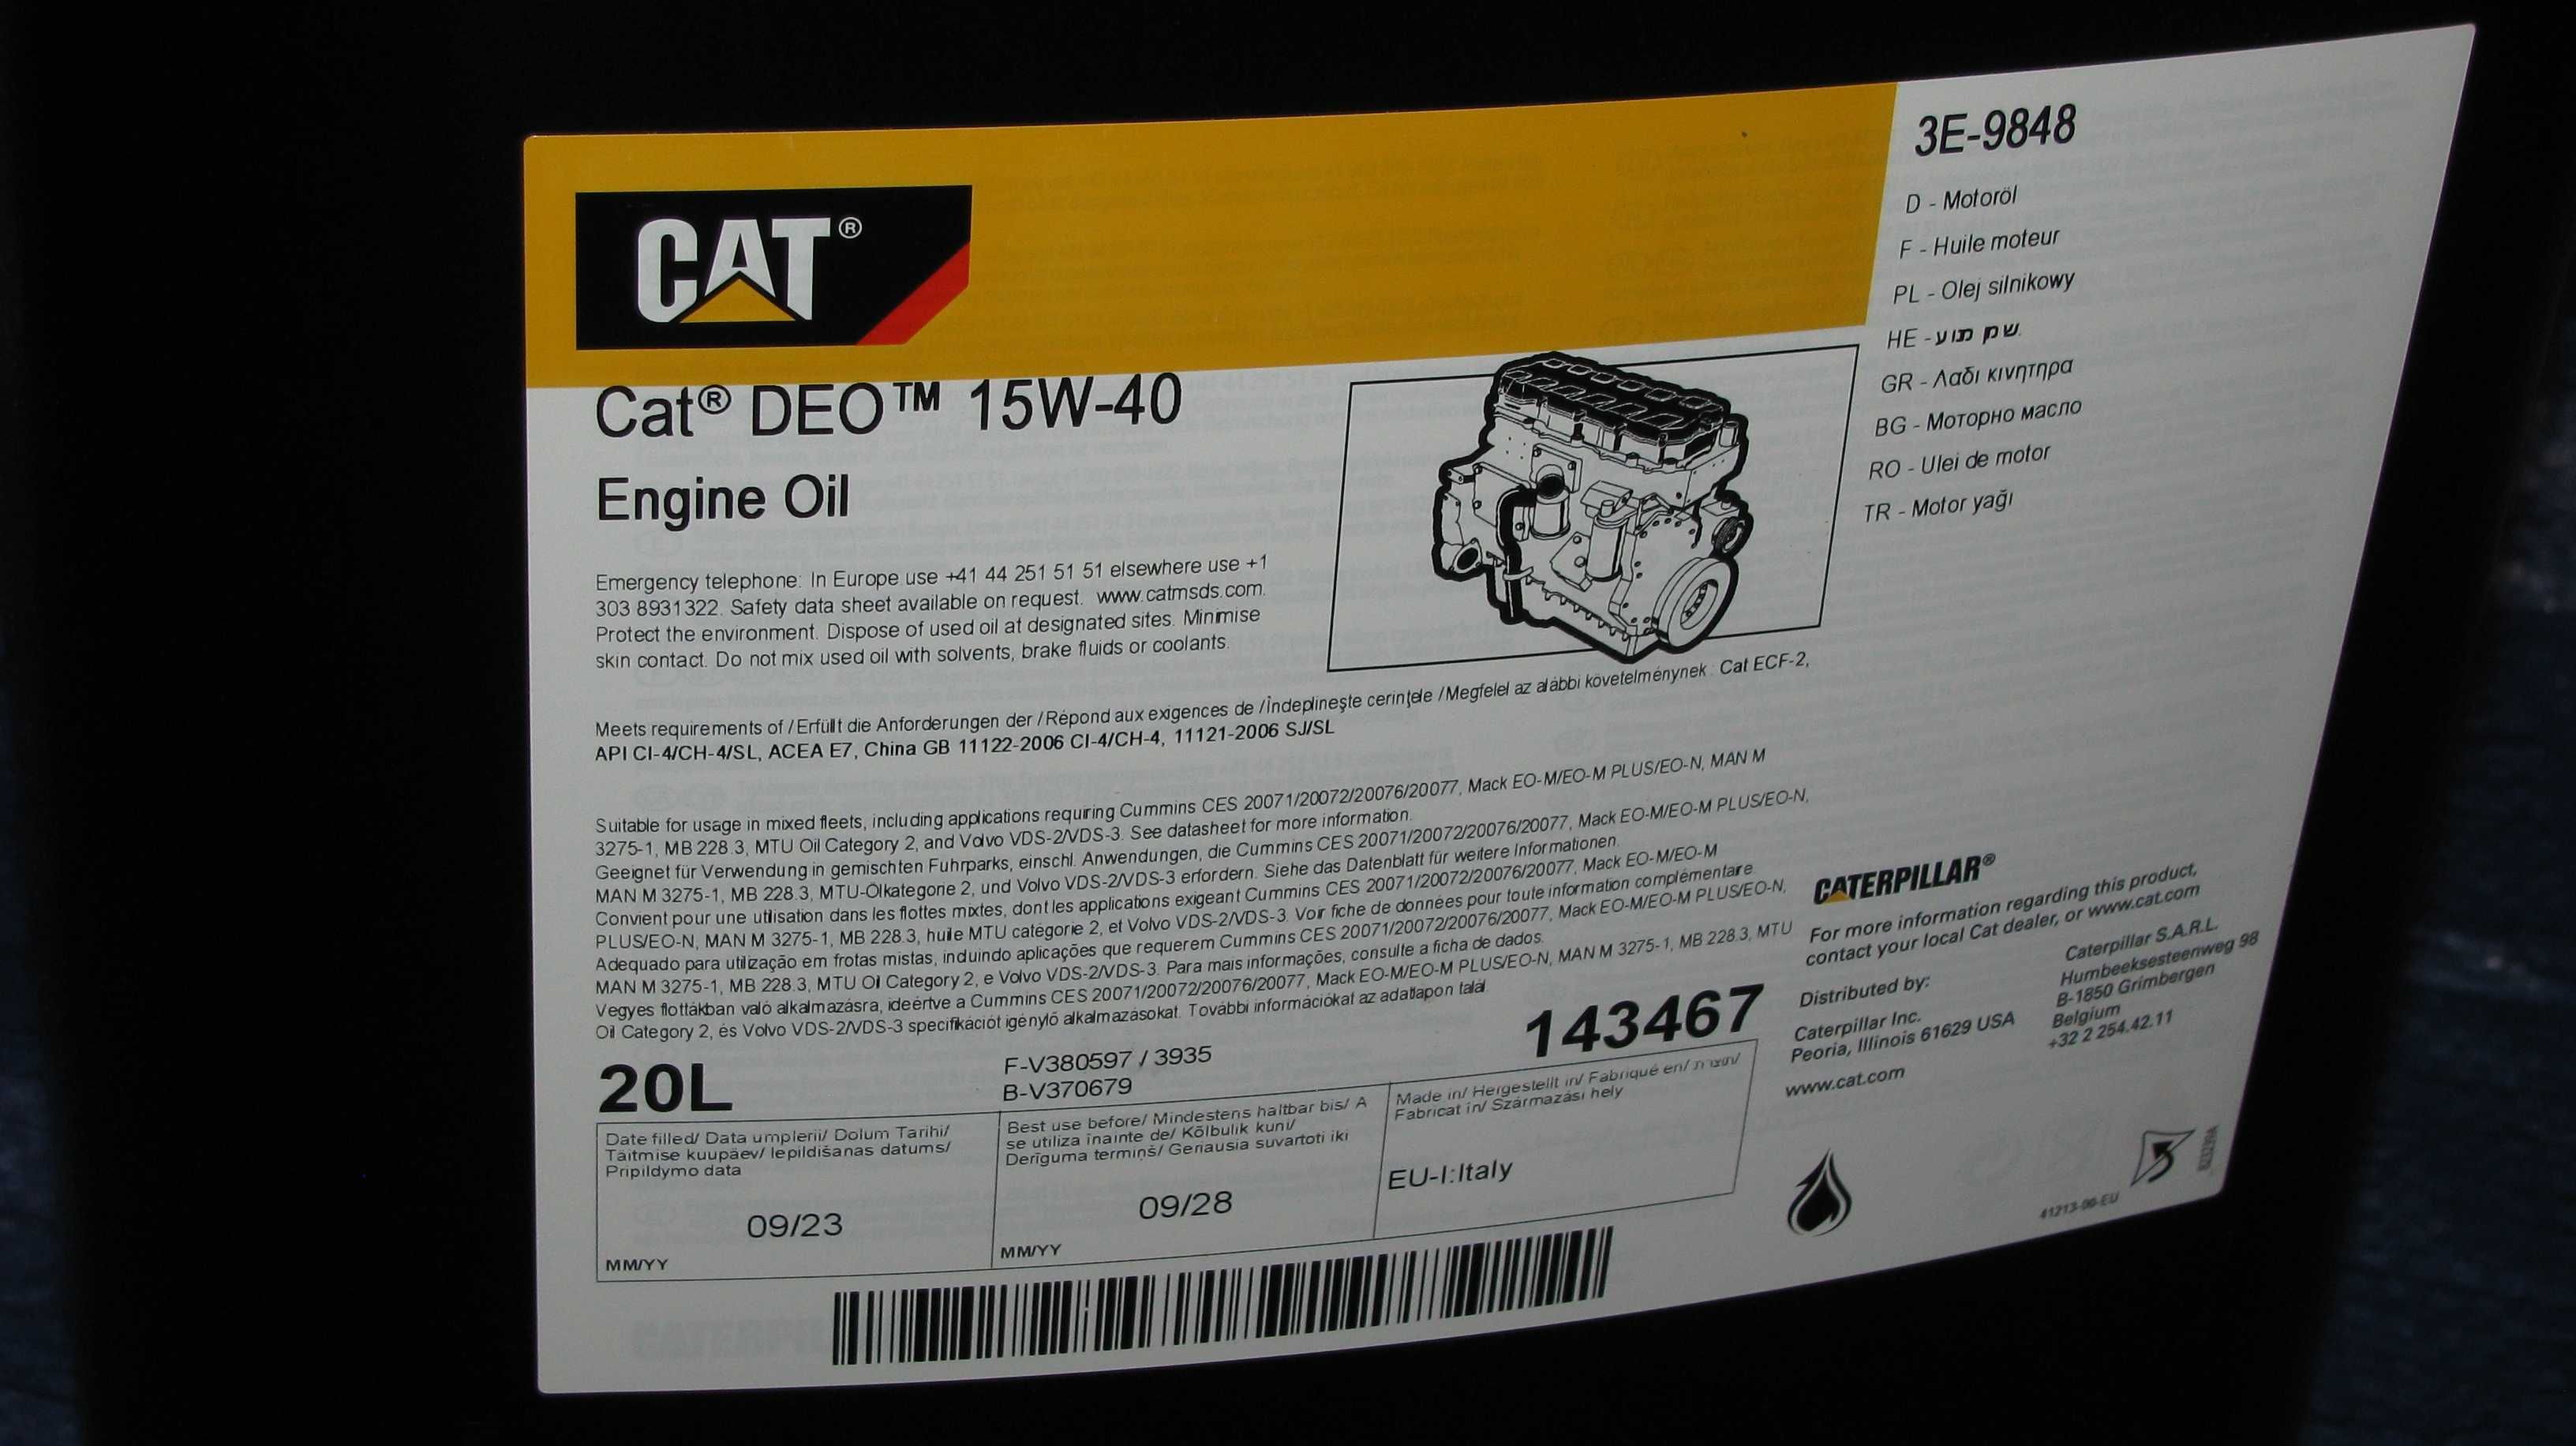 CAT DEO Engine Oil 20 litrów catarpilar olej silnikowy 15W-40